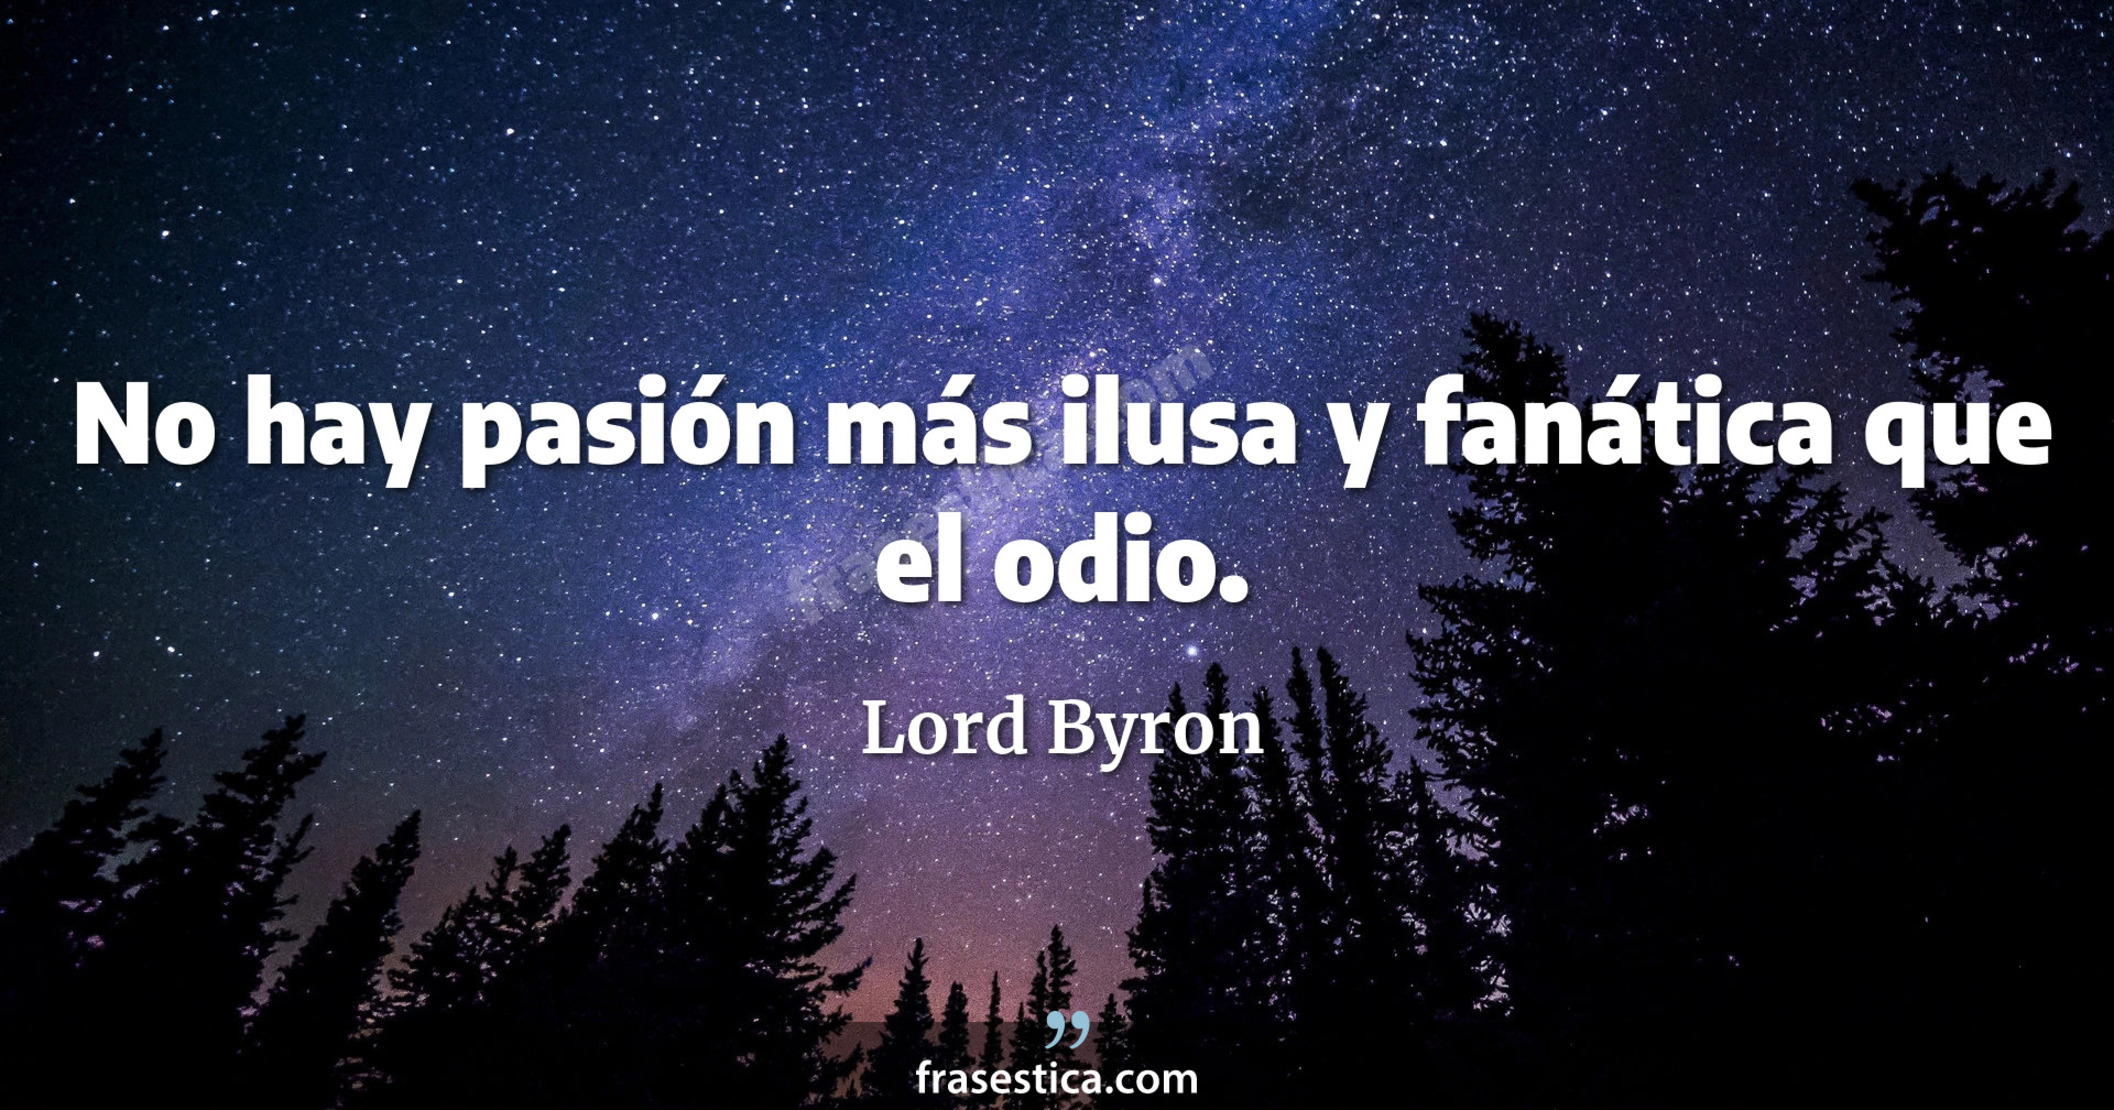 No hay pasión más ilusa y fanática que el odio. - Lord Byron